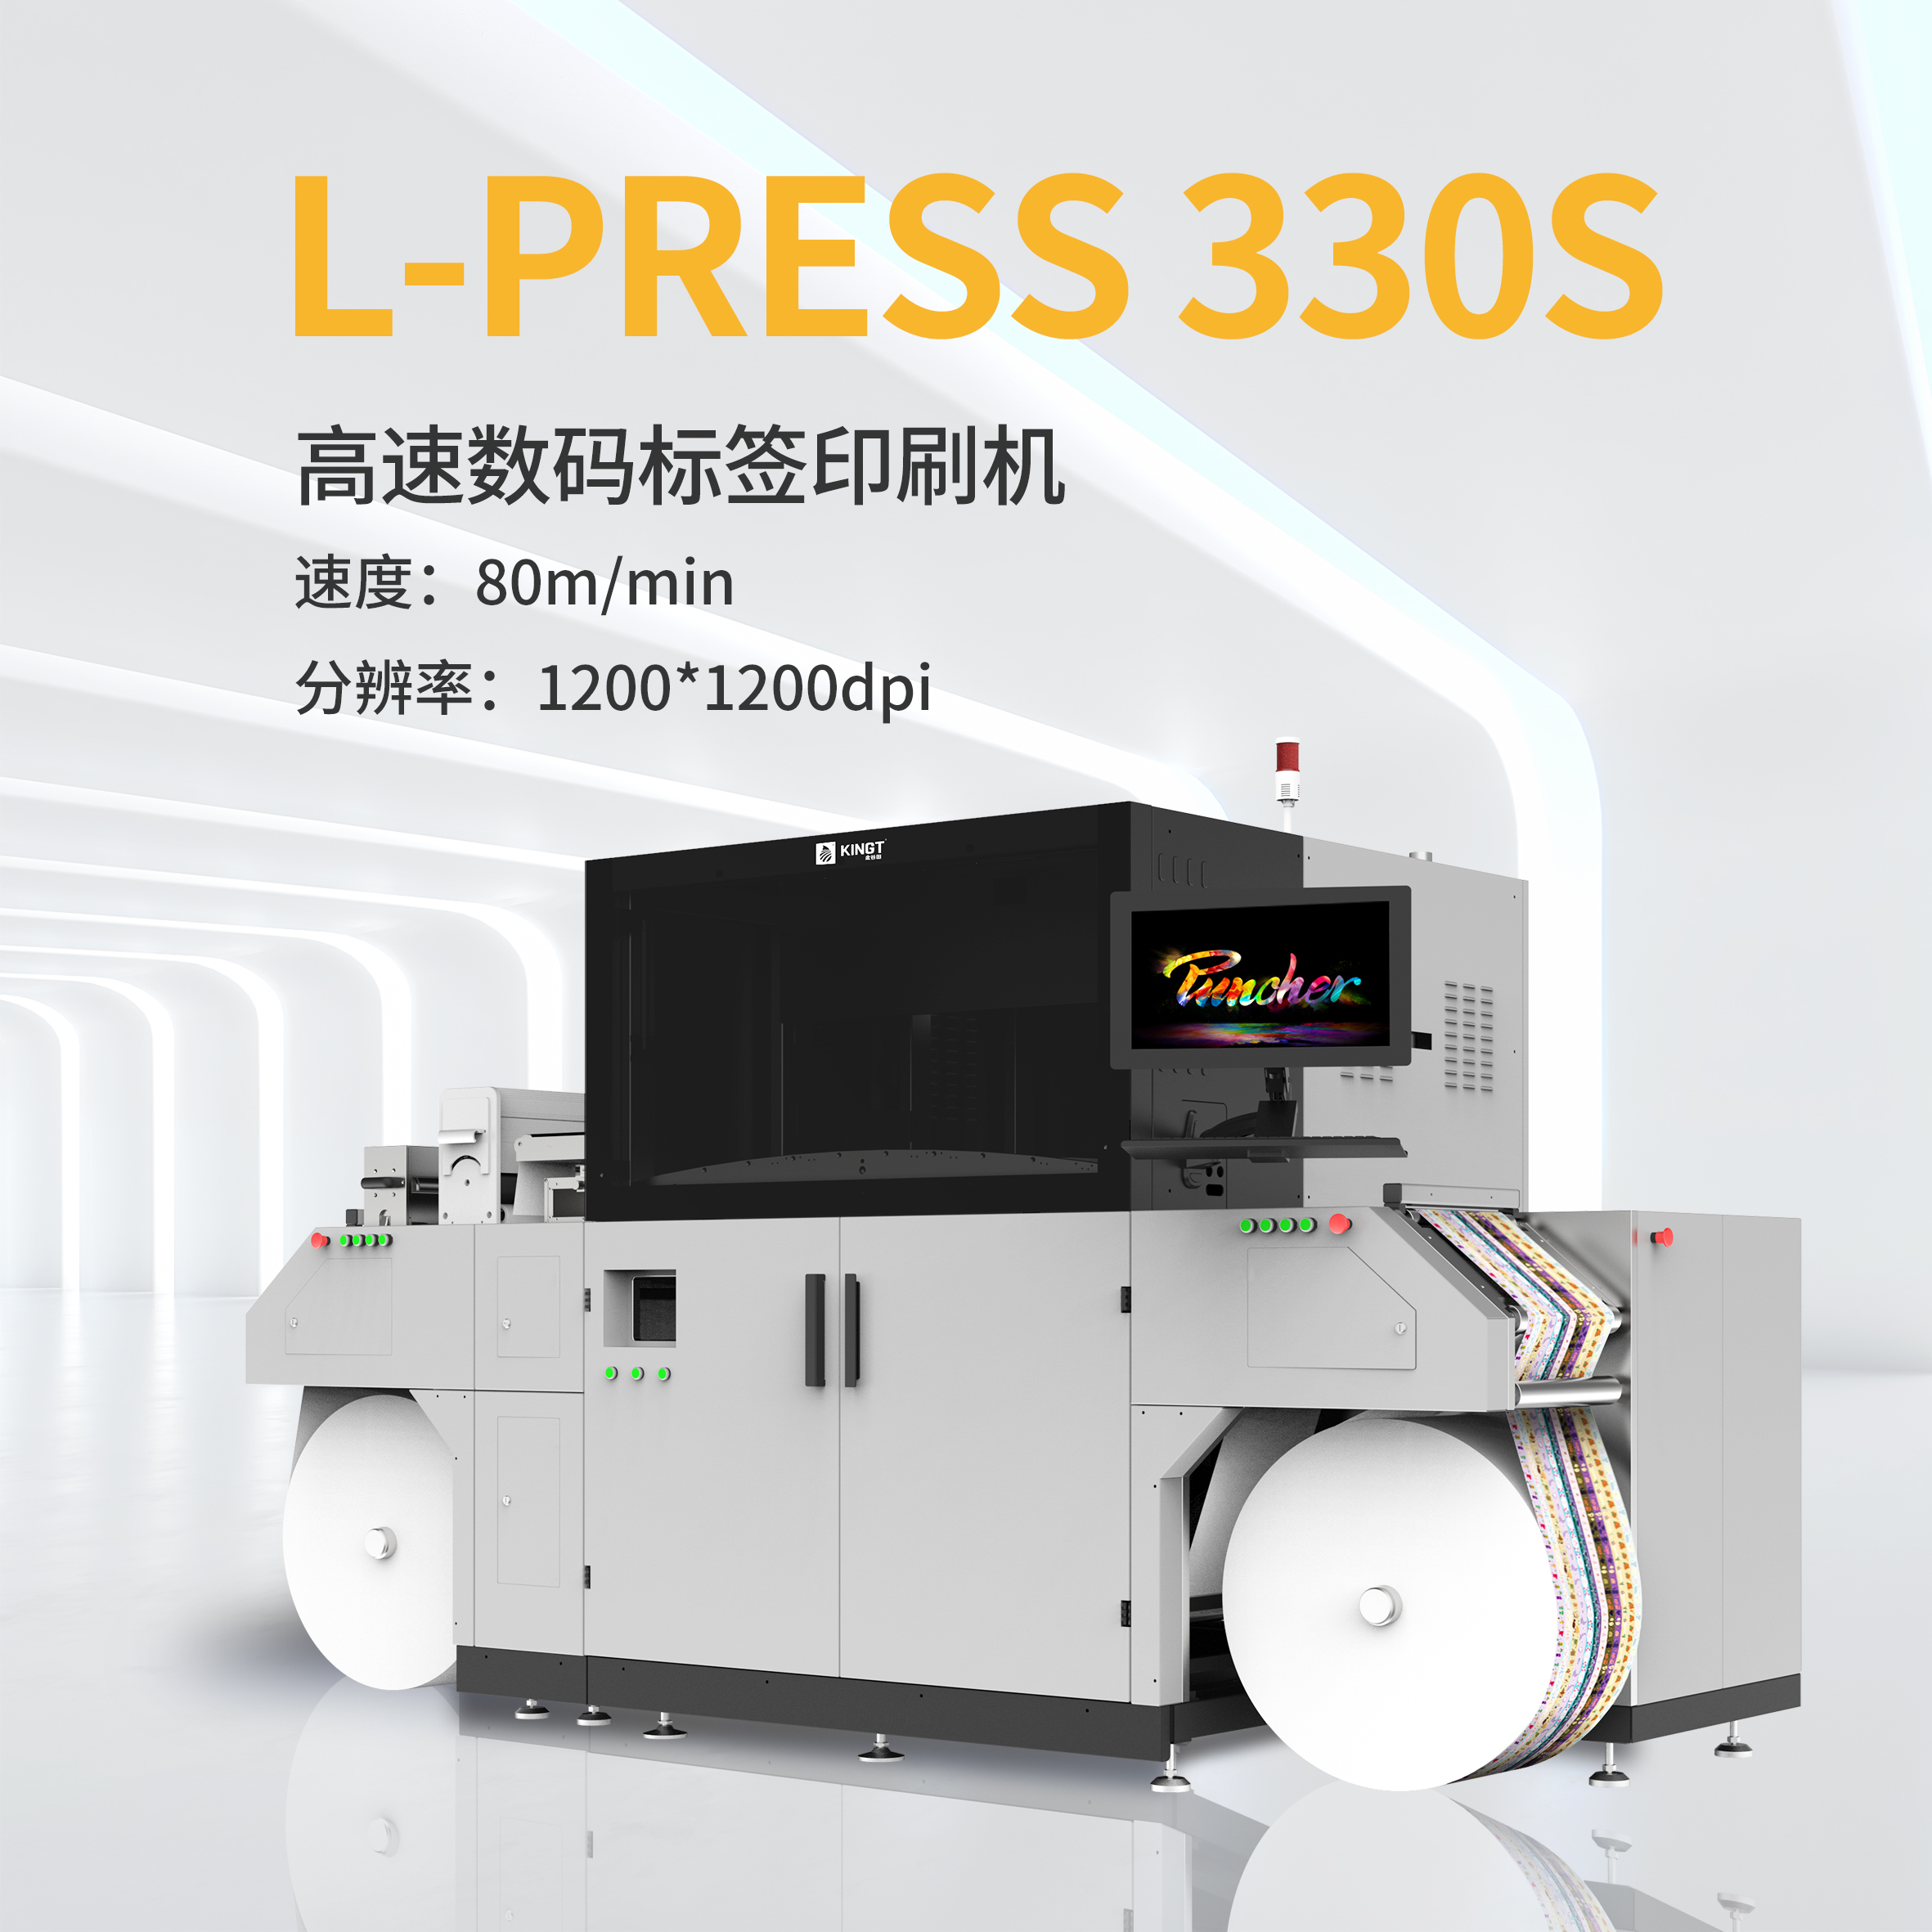 金谷田厂家KGT-L-press 330高速数码标签印刷机